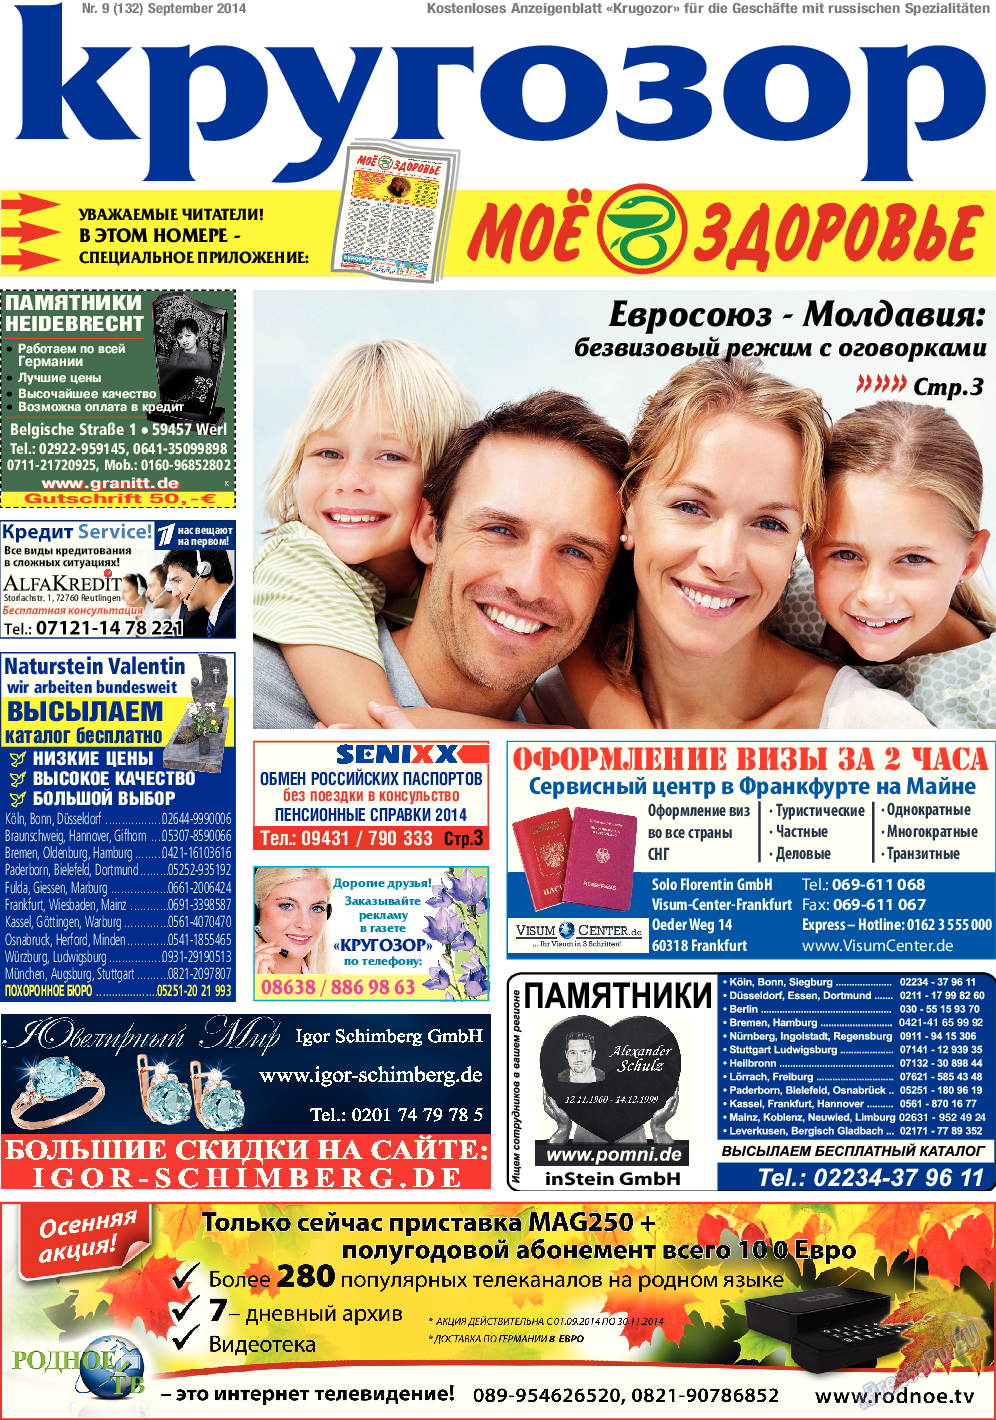 Кругозор (газета). 2014 год, номер 9, стр. 1